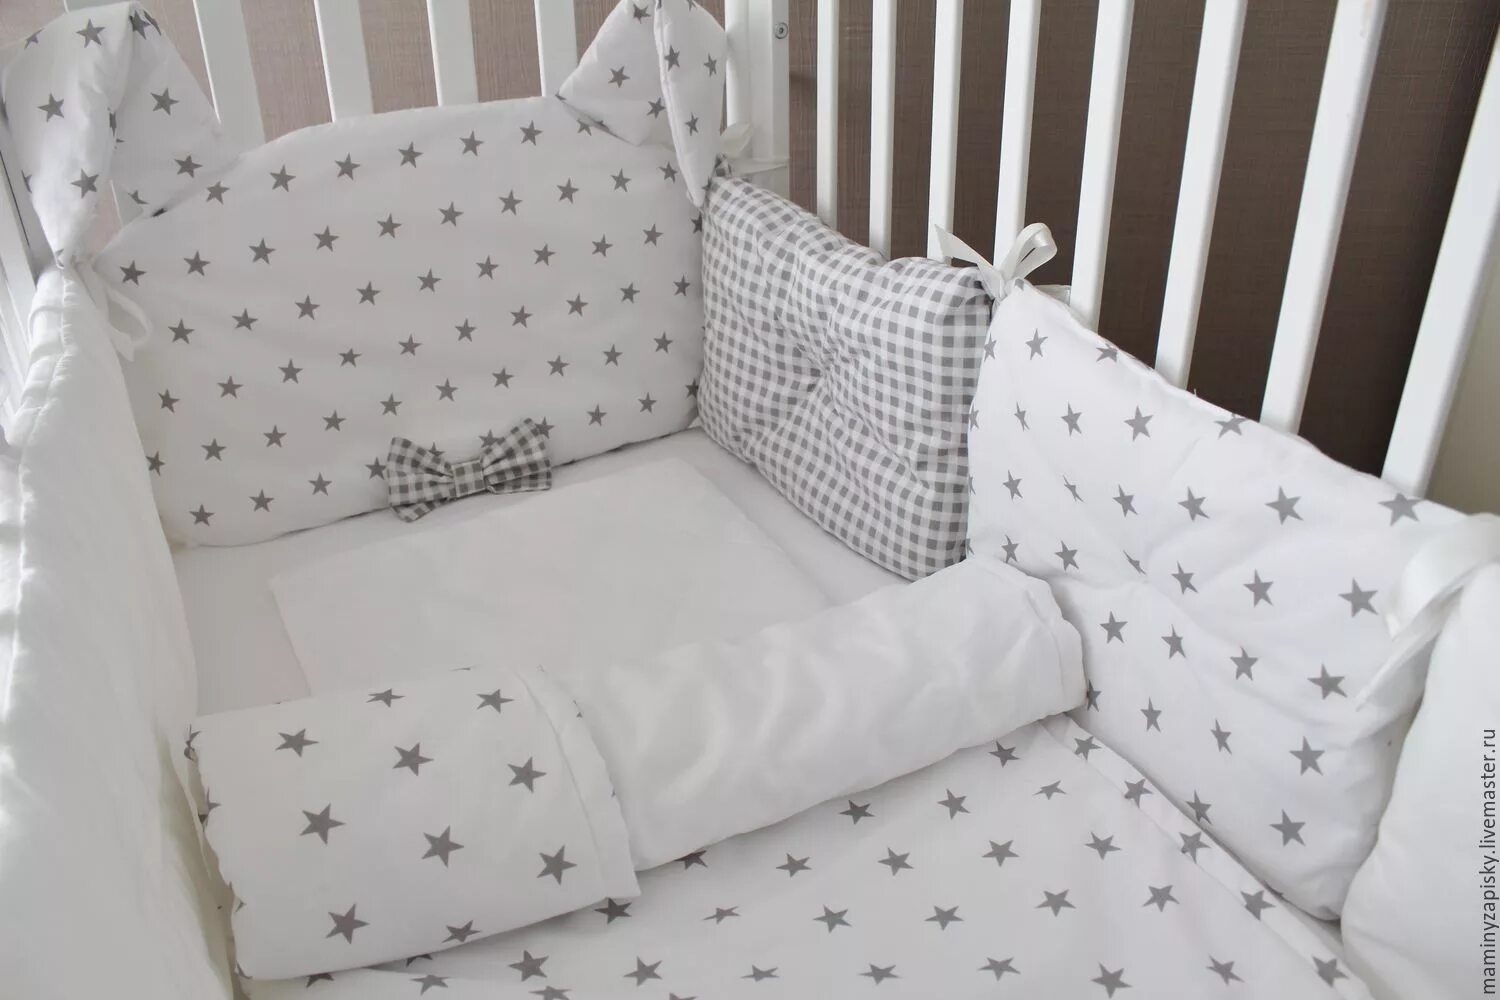 Комплект постельного для новорожденного. Комплект в кроватку для новорожденных с бортиками подушками. Комплект постельного белья для новорожденного в кроватку с бортиками. Комплект в кроватку для новорожденных с бортиками. Красивые бортики в кроватку.